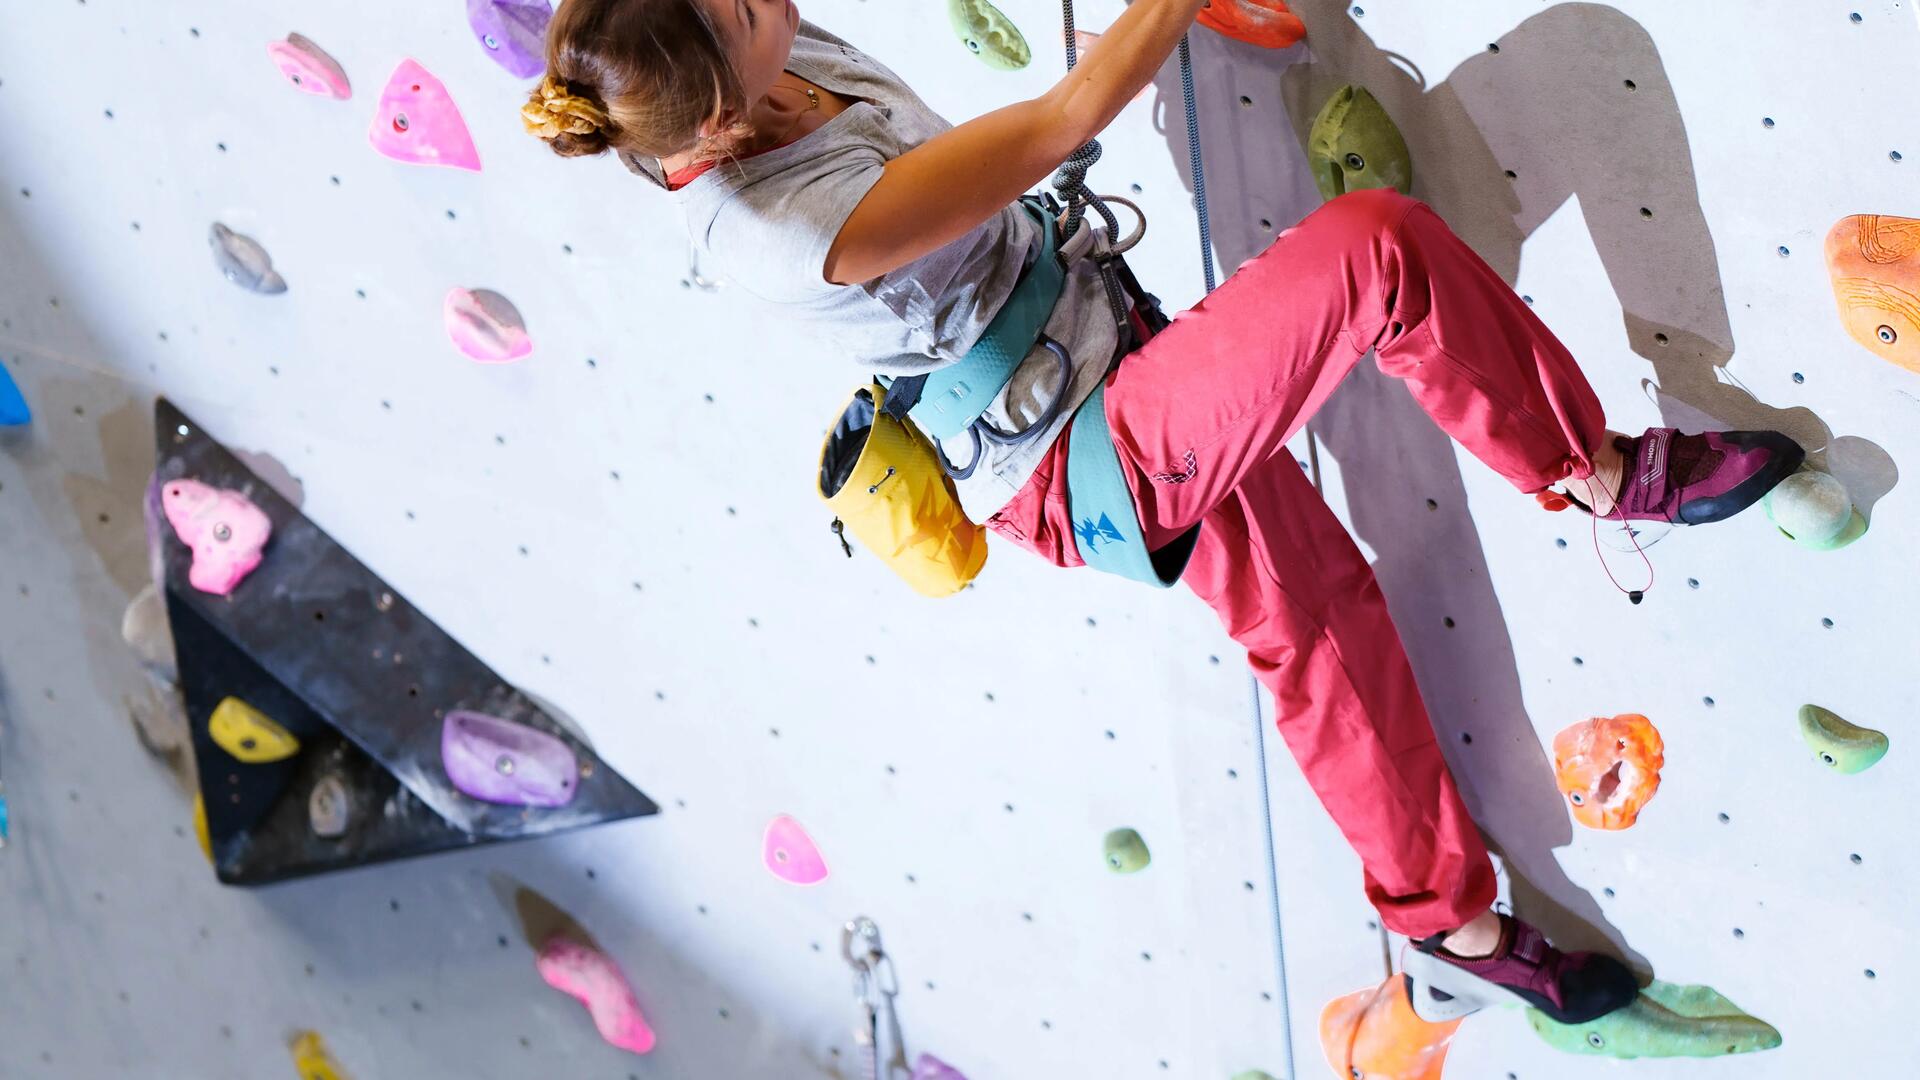 kobieta wspinająca się po ściance w uprzęży i butach do wspinaczki 